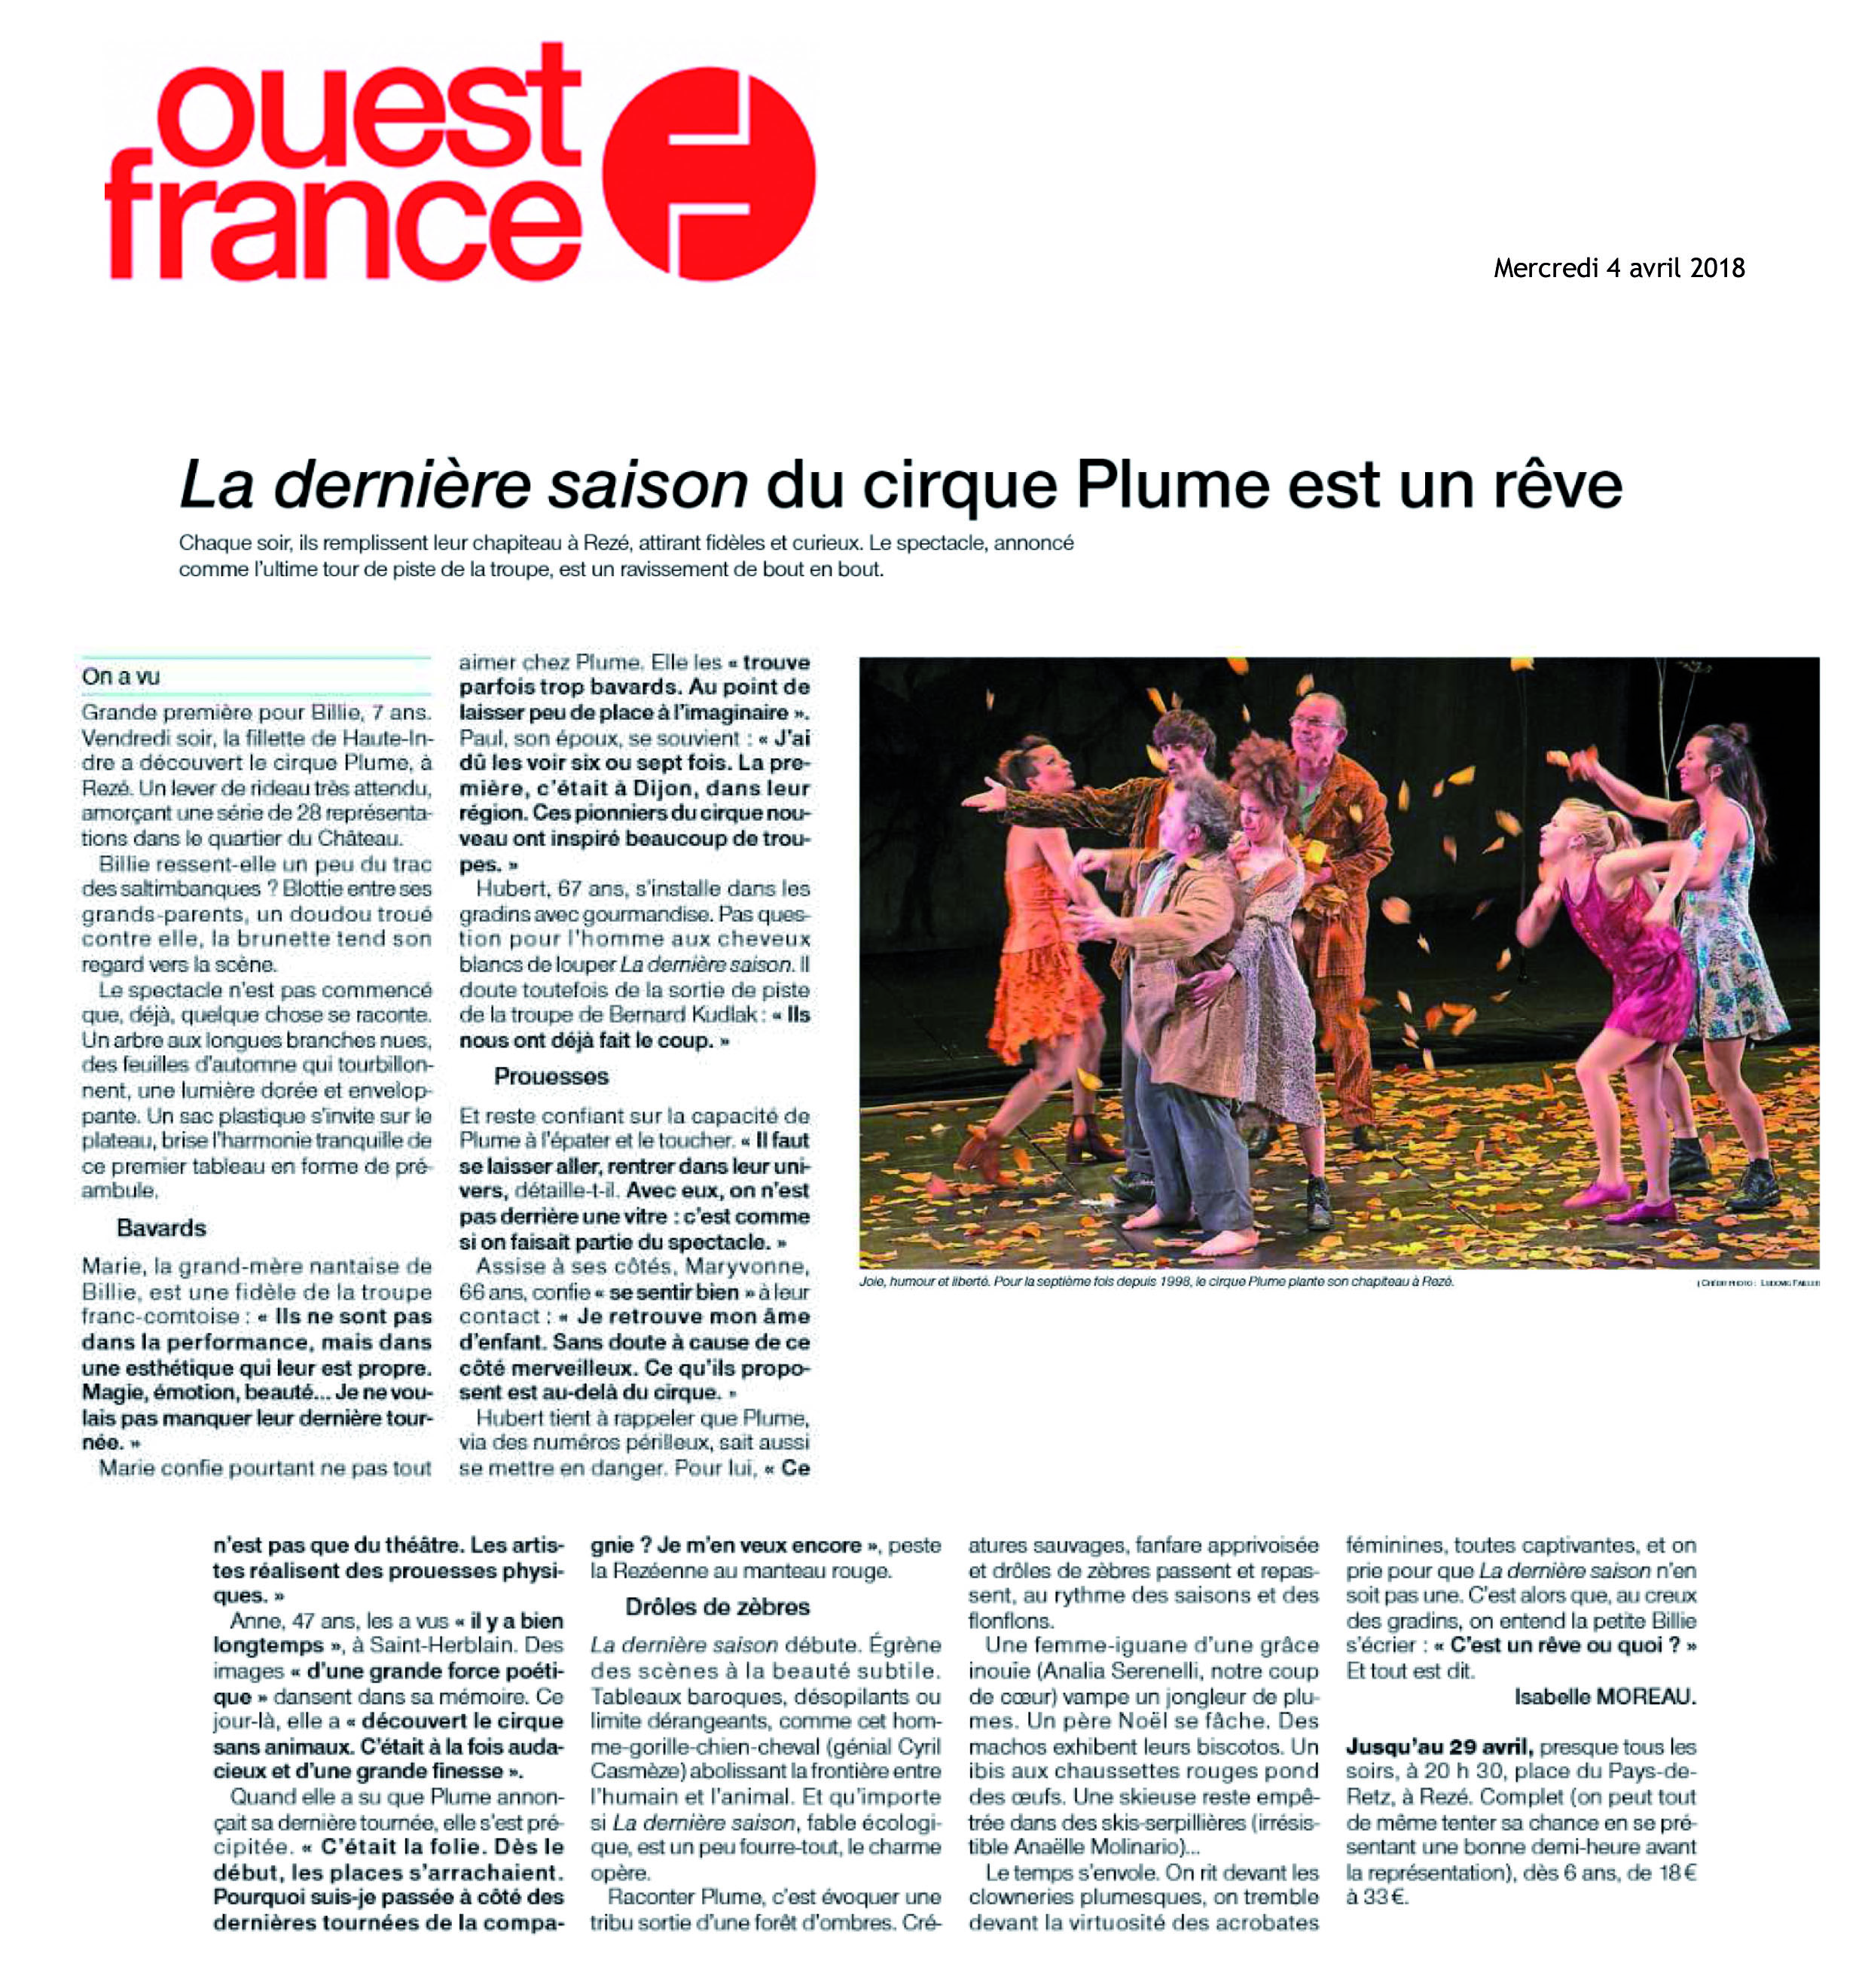 La dernière saison du Cirque Plume est un rêve | Ouest France (presse_lds) {PDF}